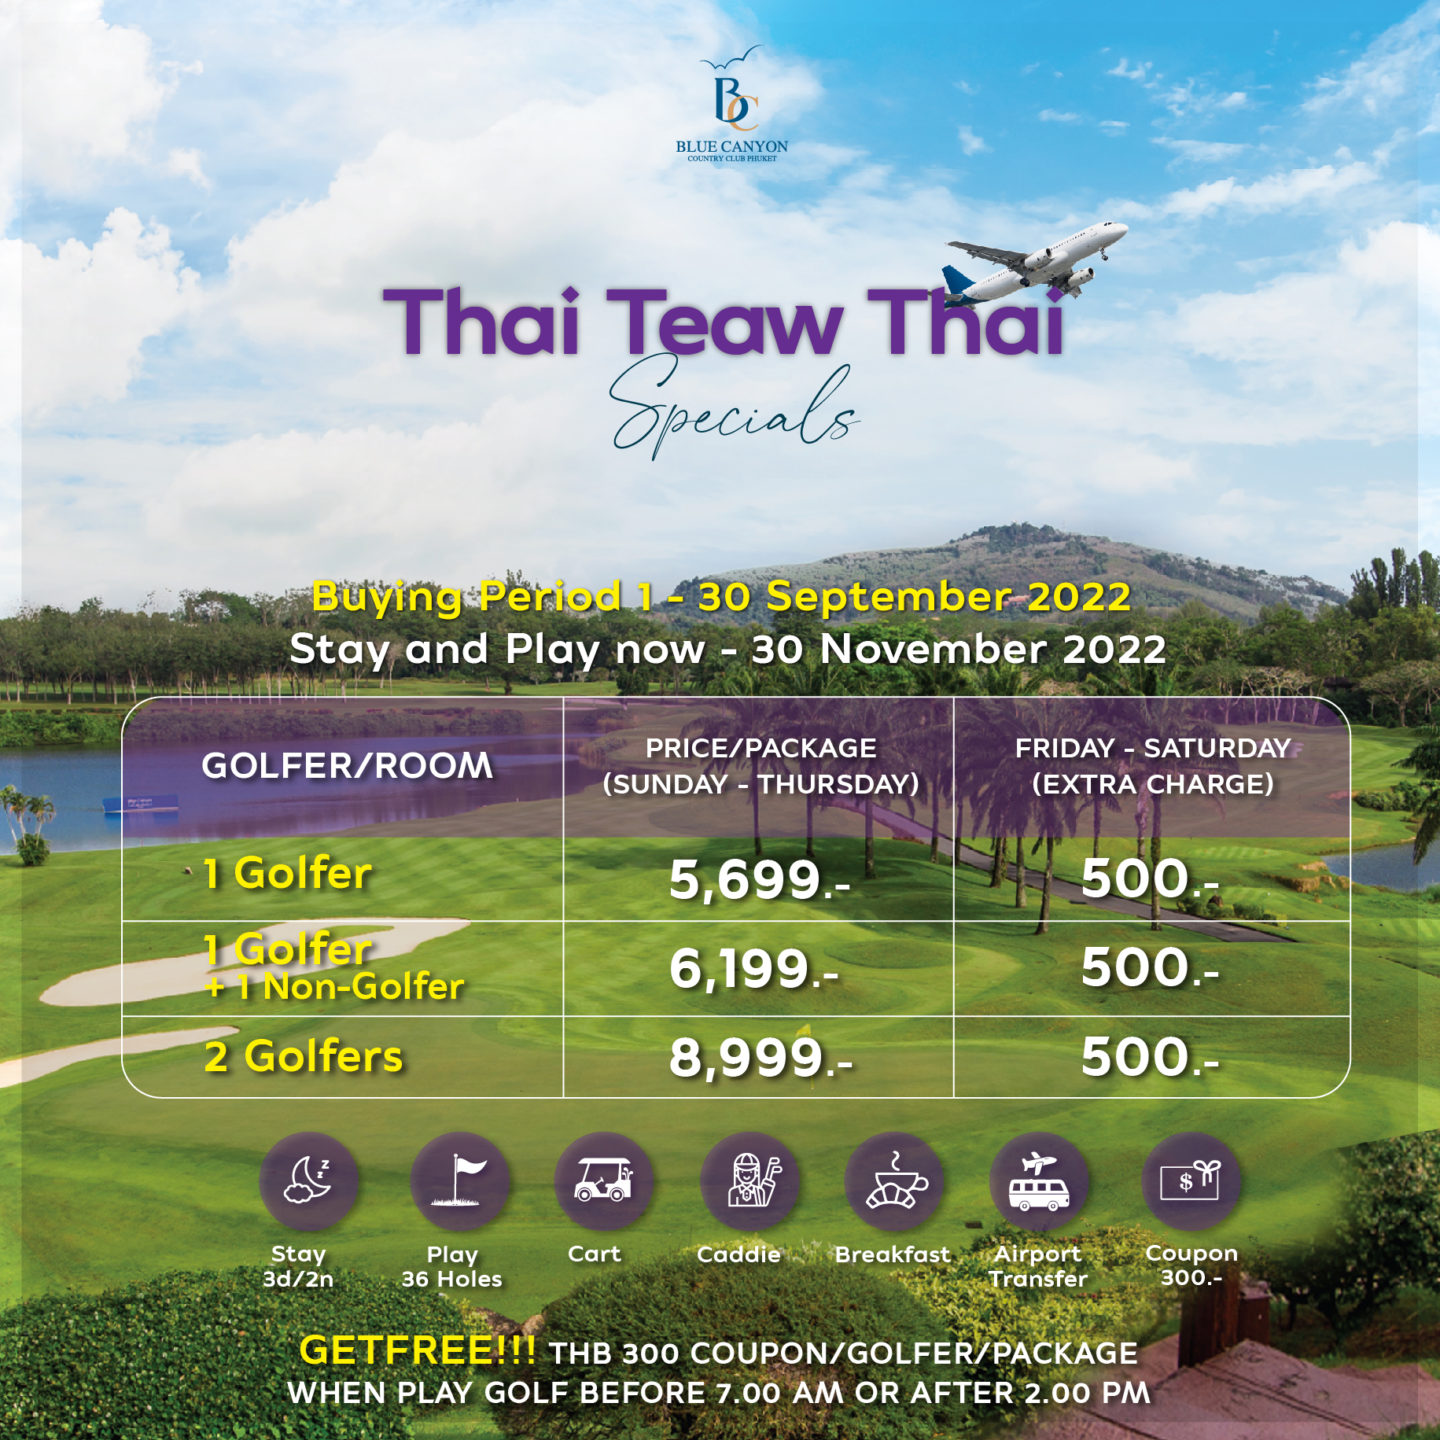 Thai Teaw Thai 63 - EN